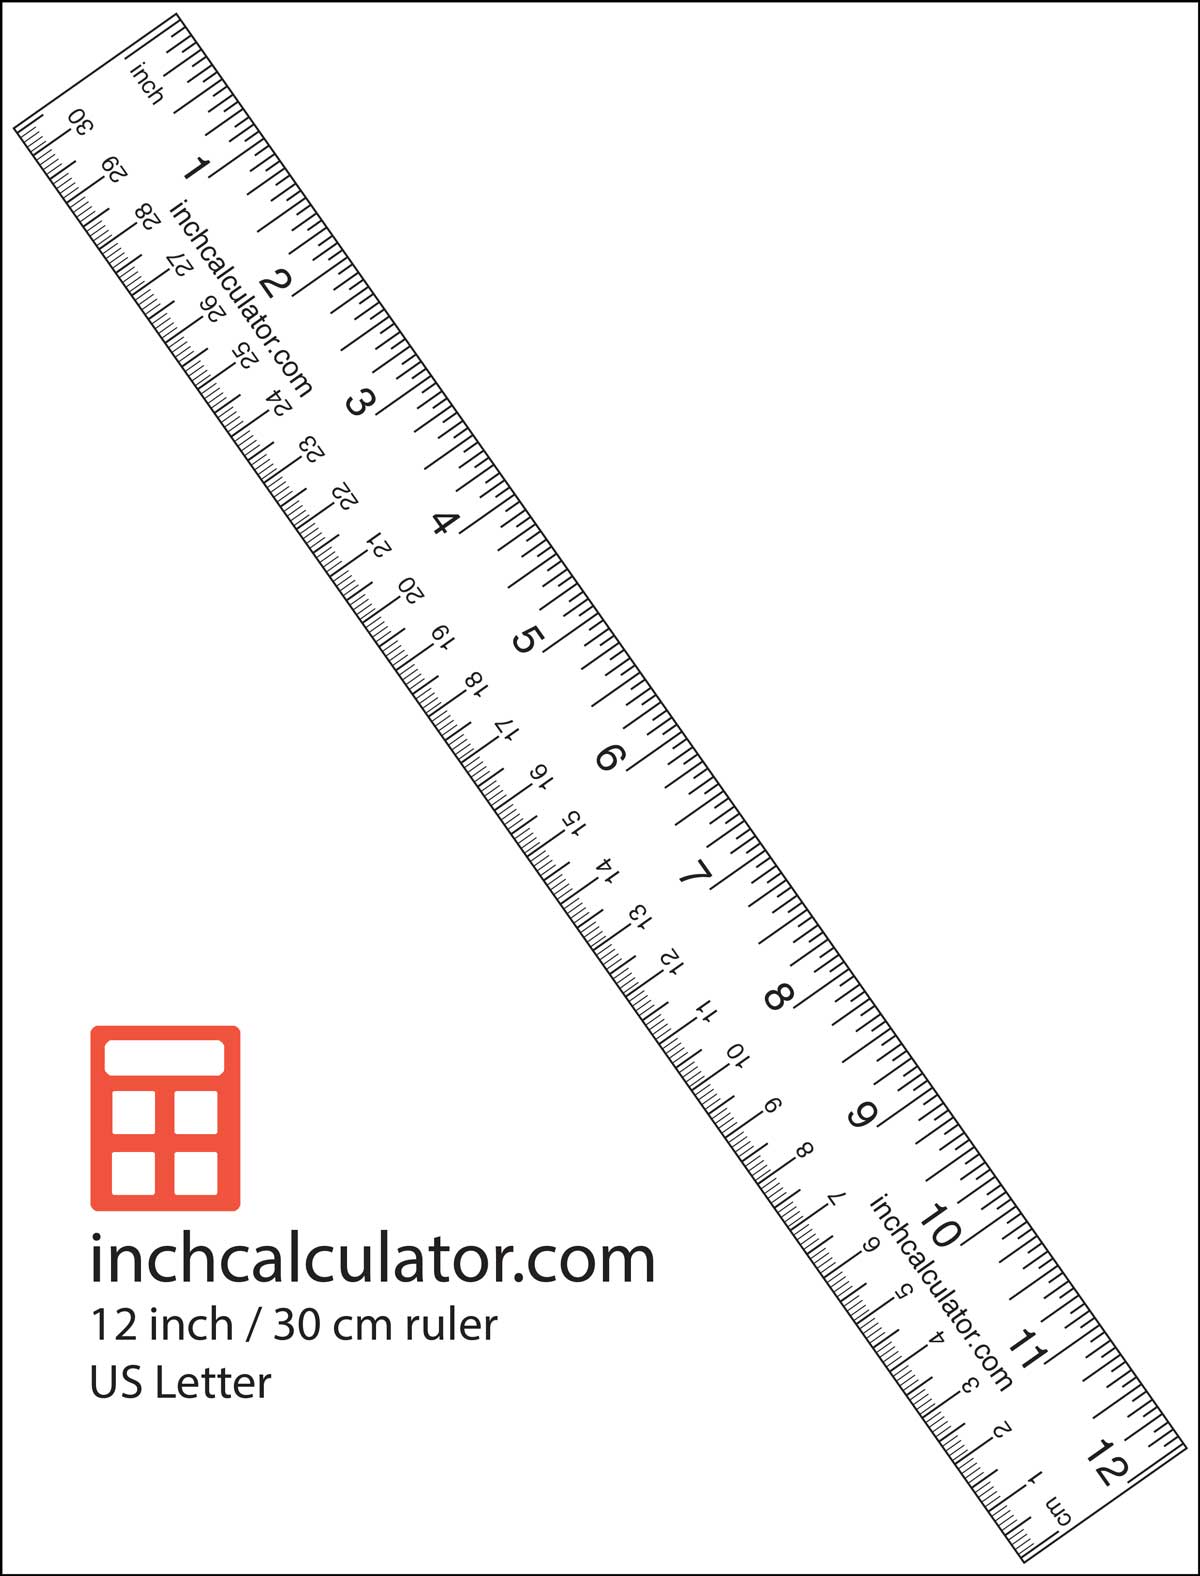 Skriv ut en papperslinjal för att göra mätningar när du inte har ett måttband eller linjal't have a tape measure or ruler